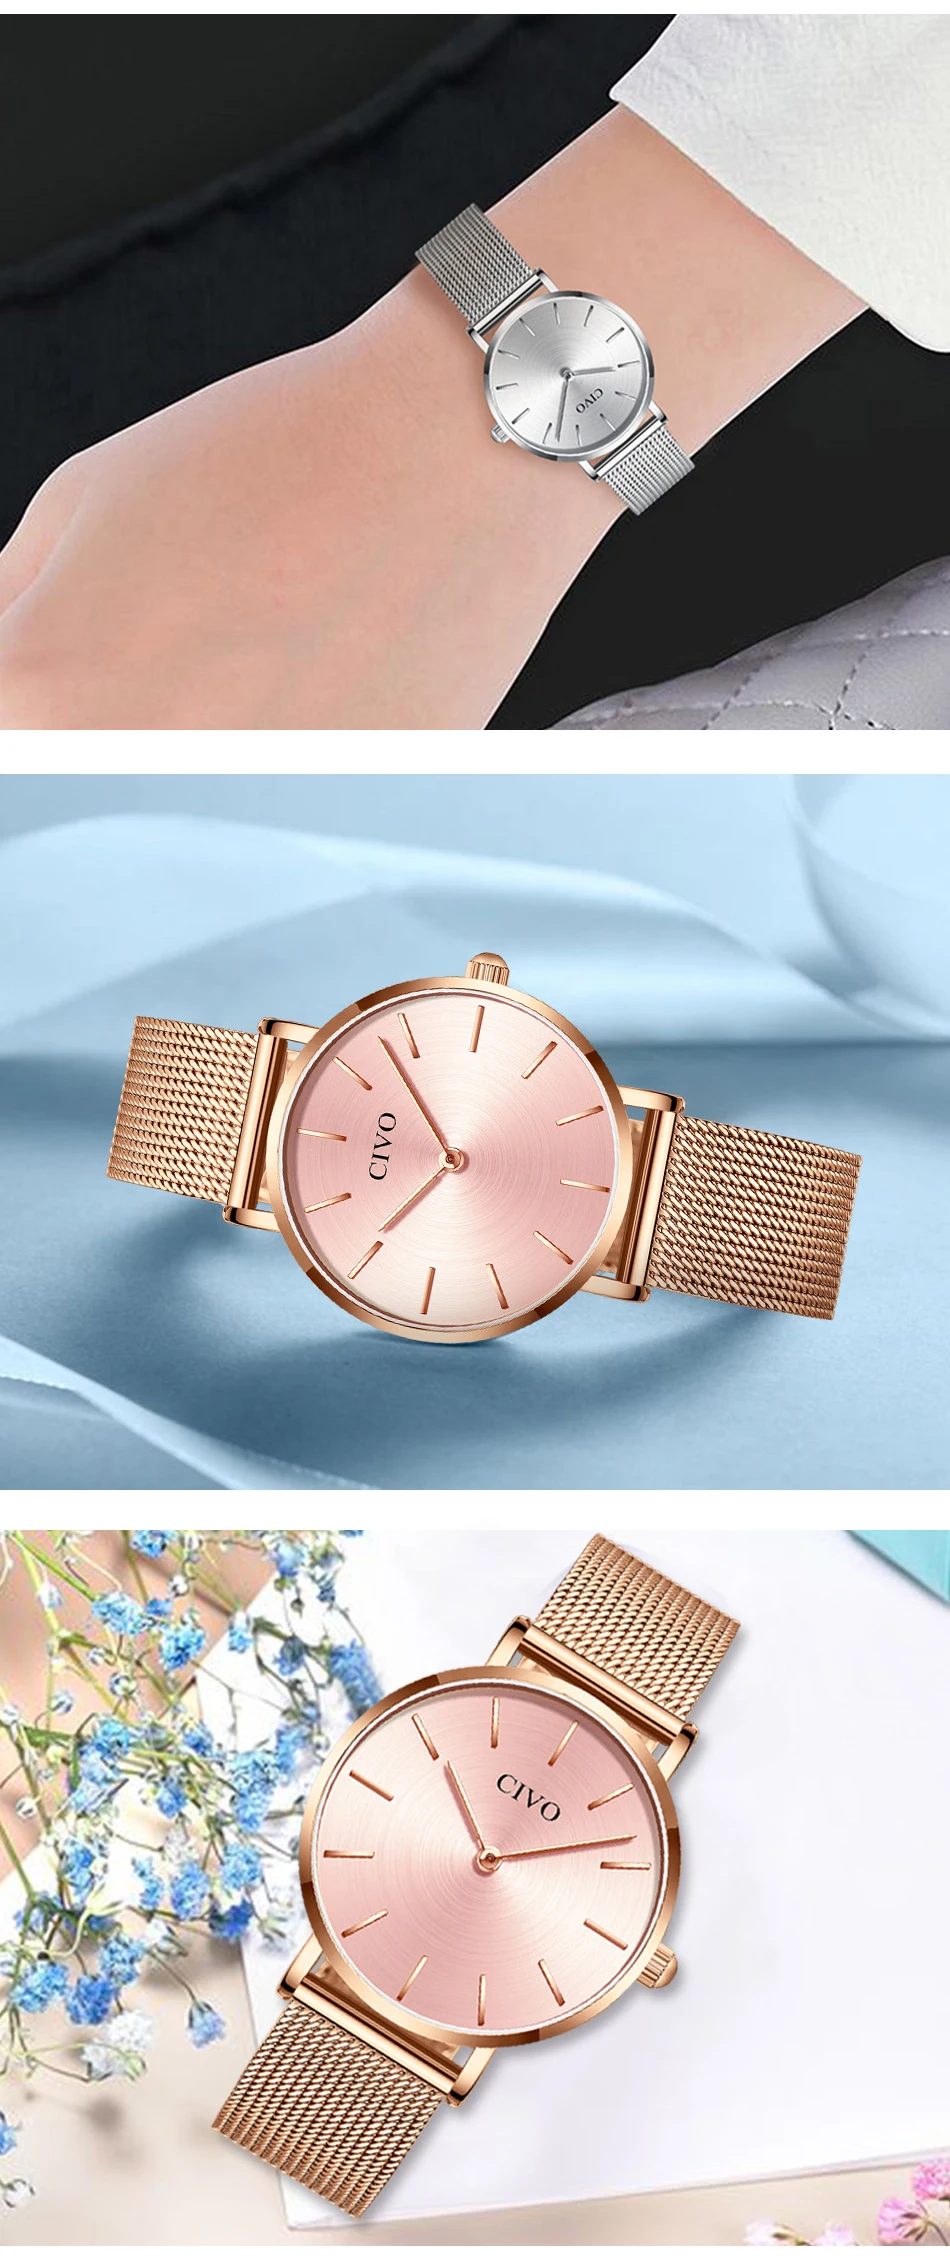 CIVO, модные наручные часы для женщин, водонепроницаемые, тонкий стальной сетчатый ремешок, кварцевые часы для женщин, простые, повседневные часы, Relogio Feminino